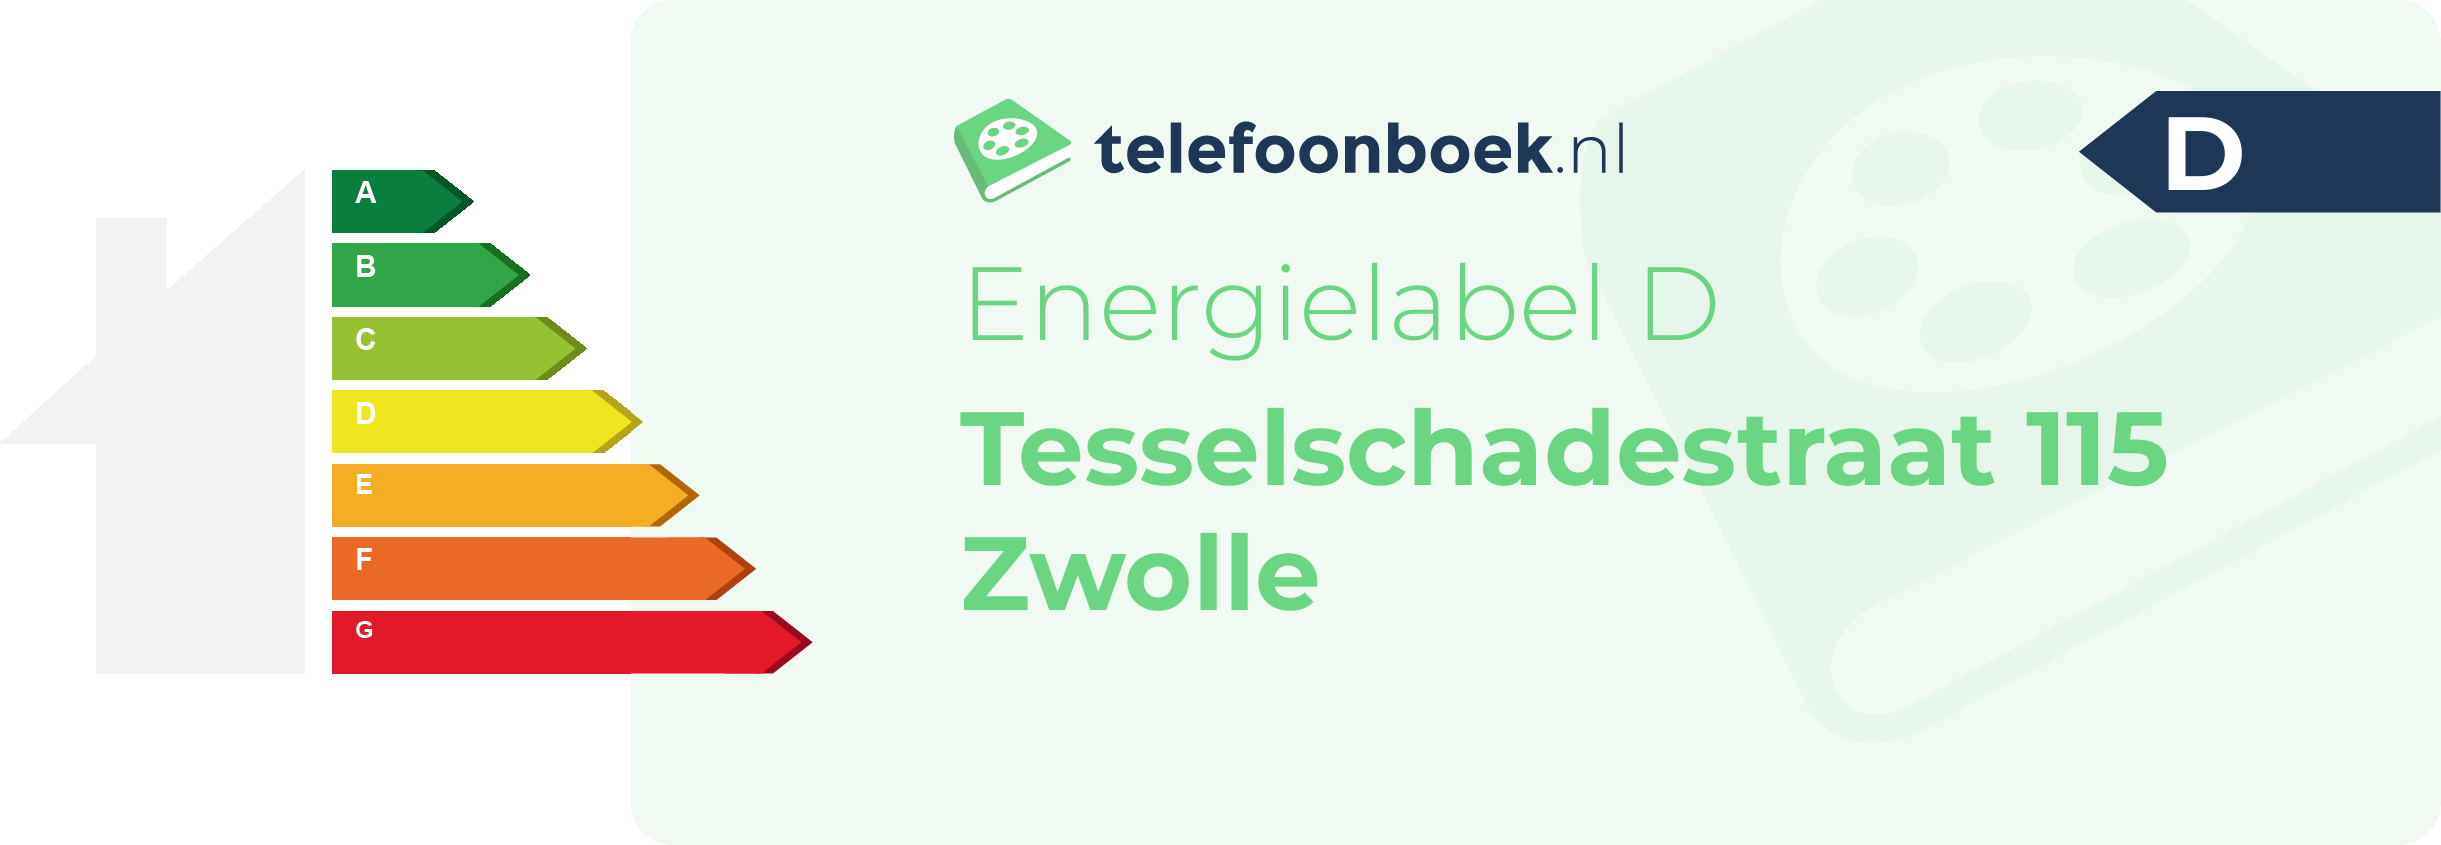 Energielabel Tesselschadestraat 115 Zwolle